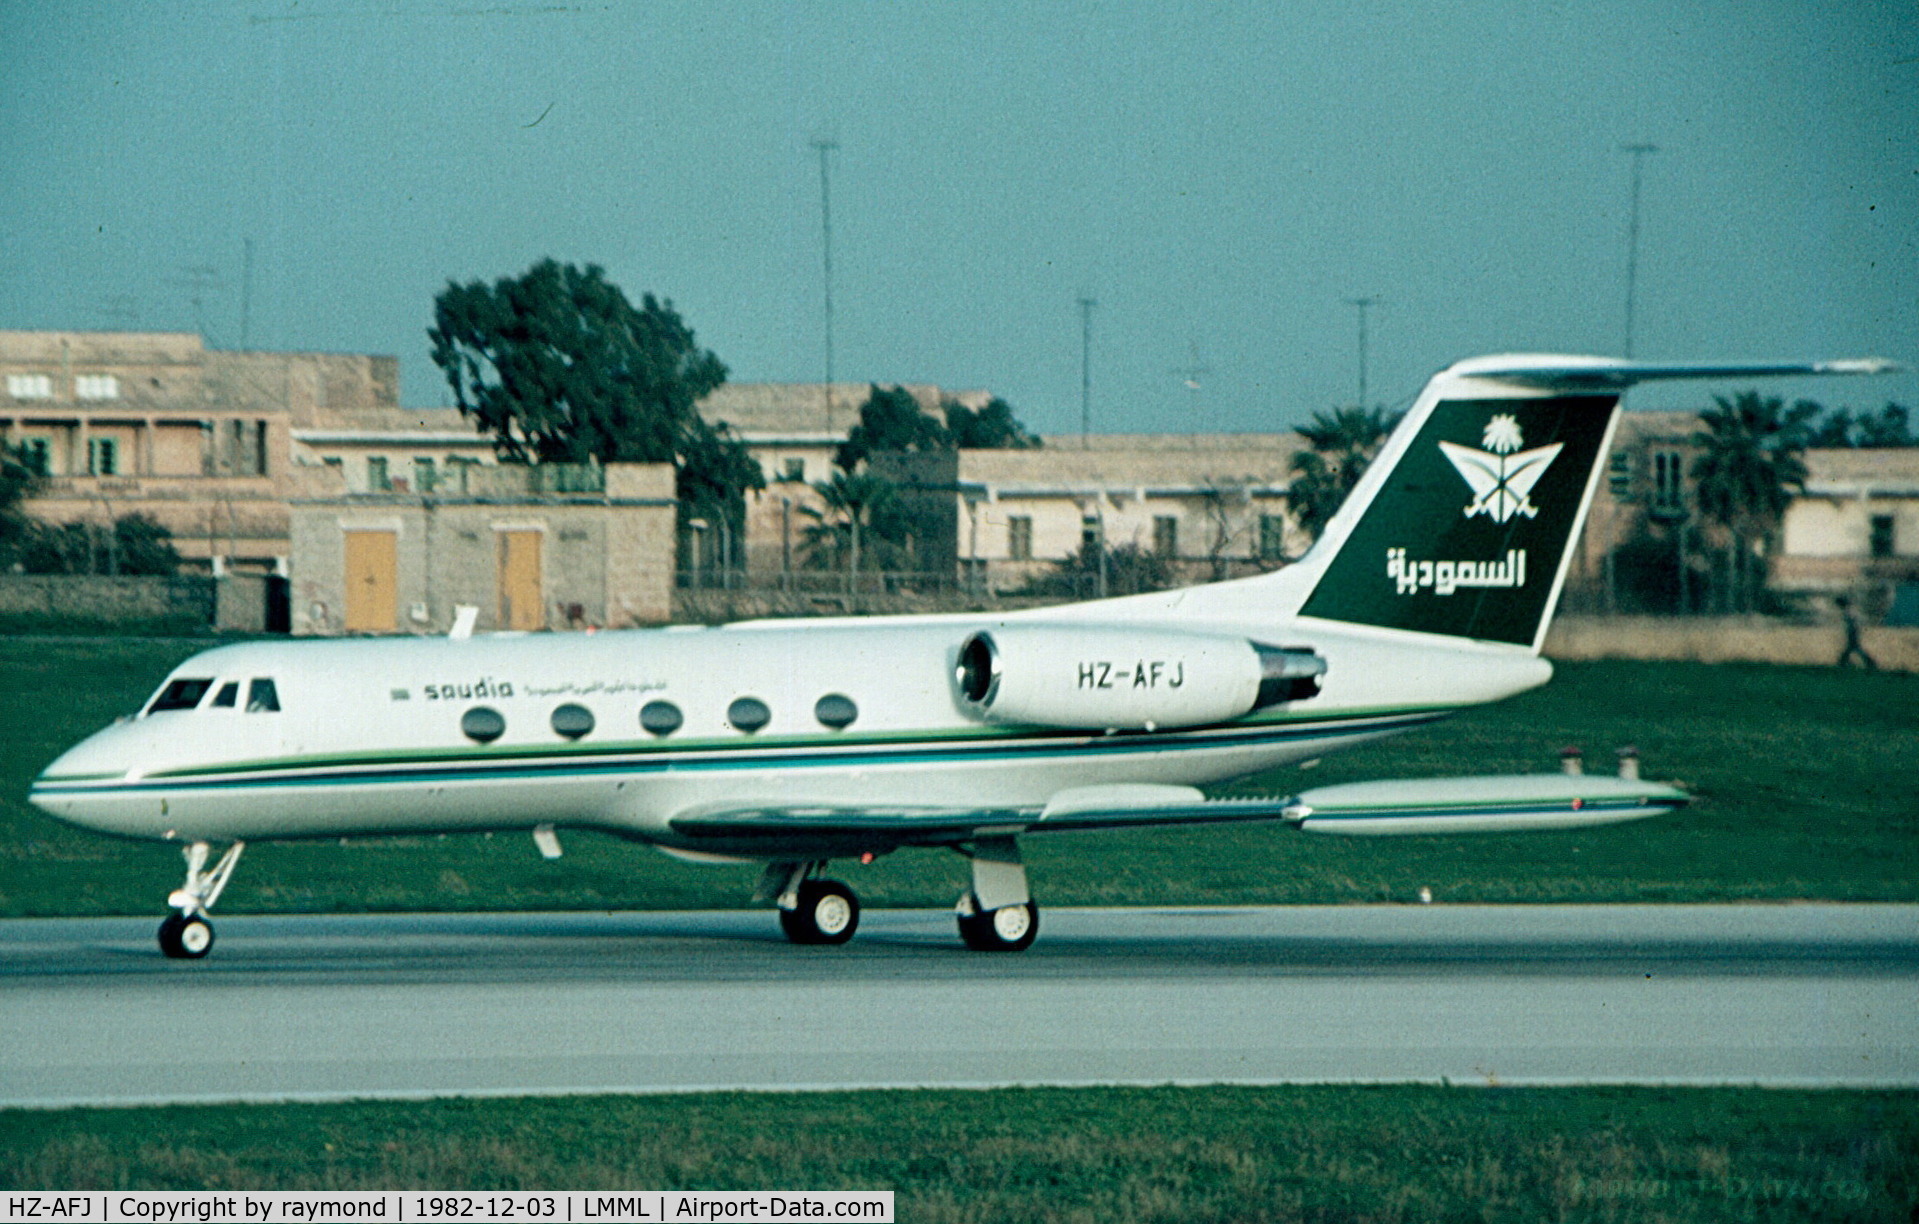 HZ-AFJ, 1977 Grumman G-1159 Gulfstream II-TT C/N 203, Gulfstream HZ-AFJ Saudia Airlines